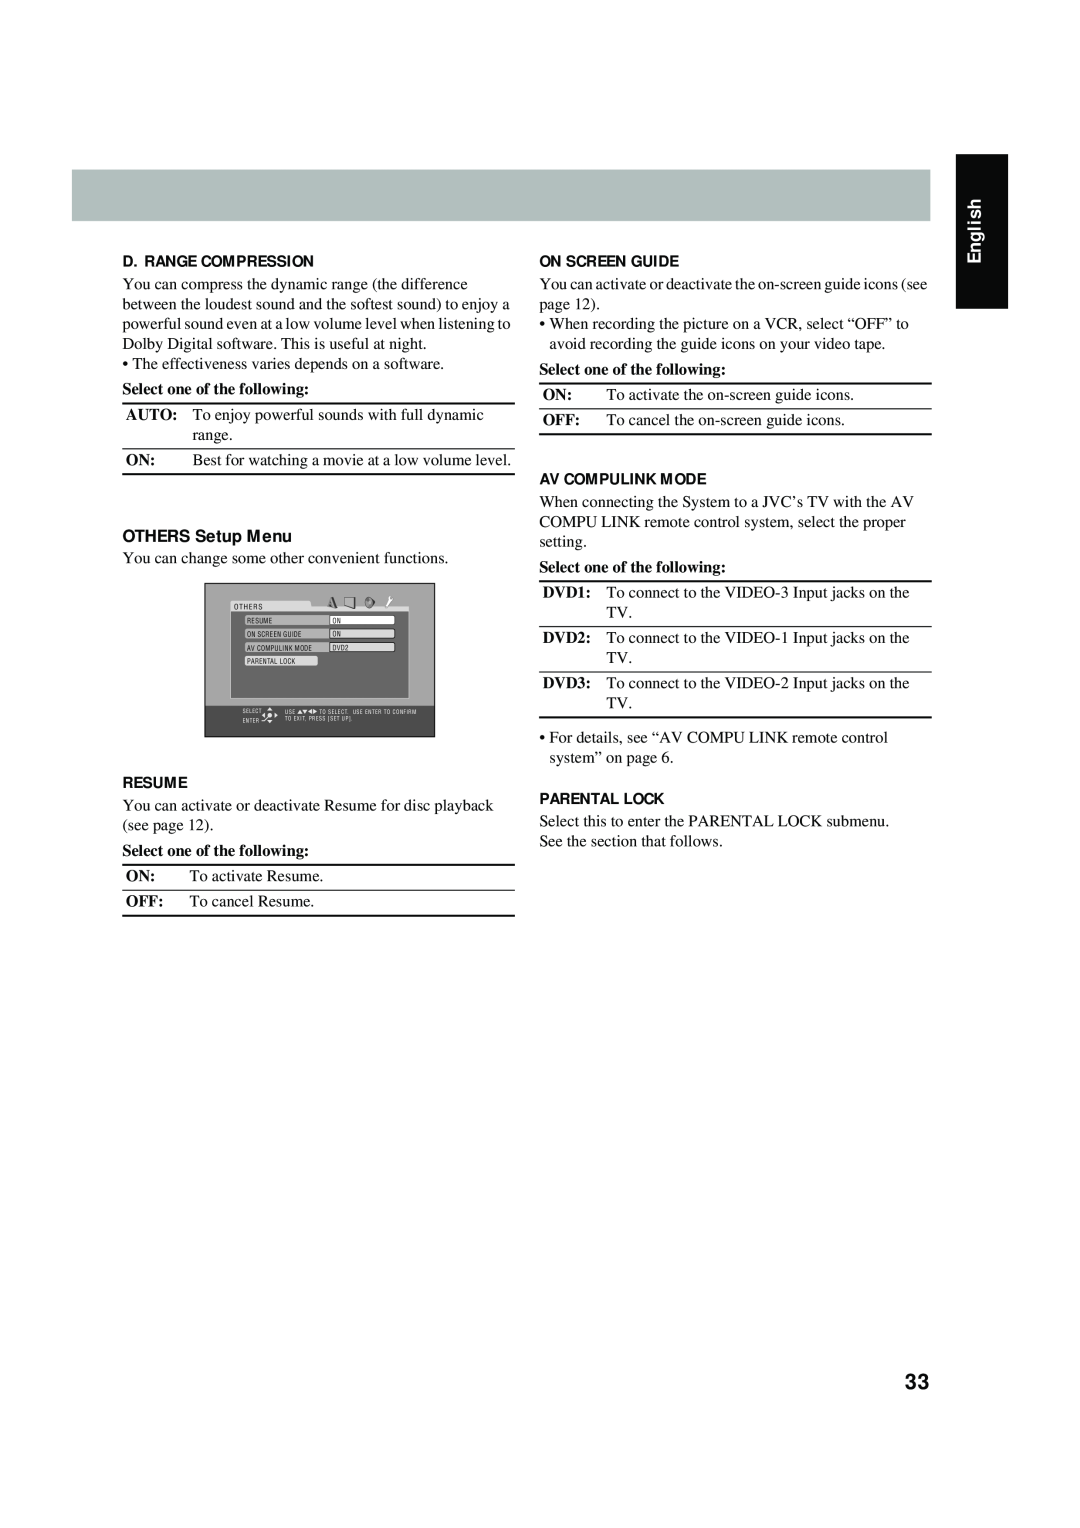 JVC FS-P550 OTHERS Setup Menu, D. Range Compression, Resume, On Screen Guide, Av Compulink Mode, Parental Lock, English 